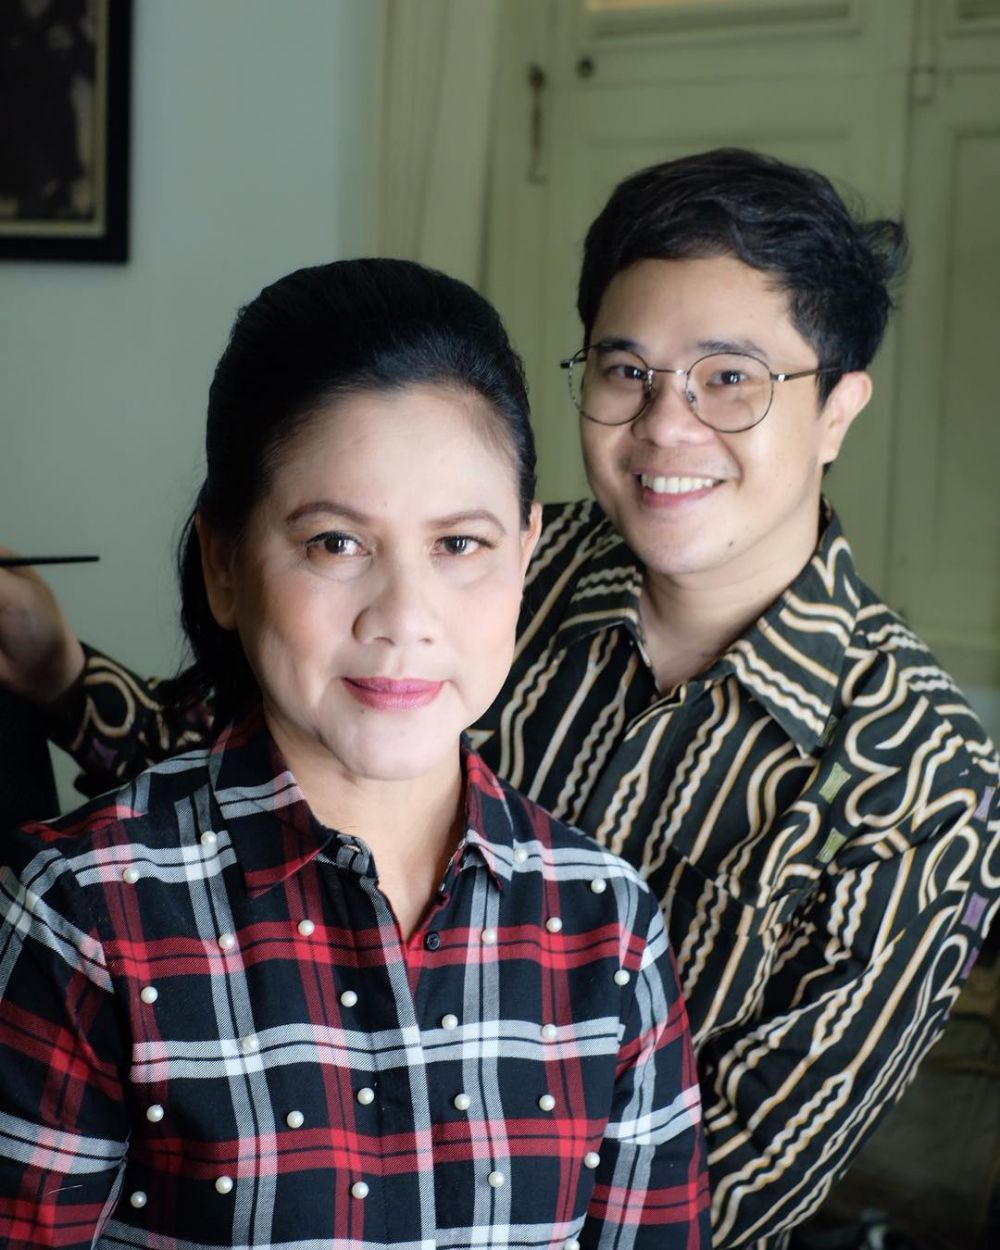 Makeup artis ungkap rahasia cantik Iriana Jokowi, bikin kagum